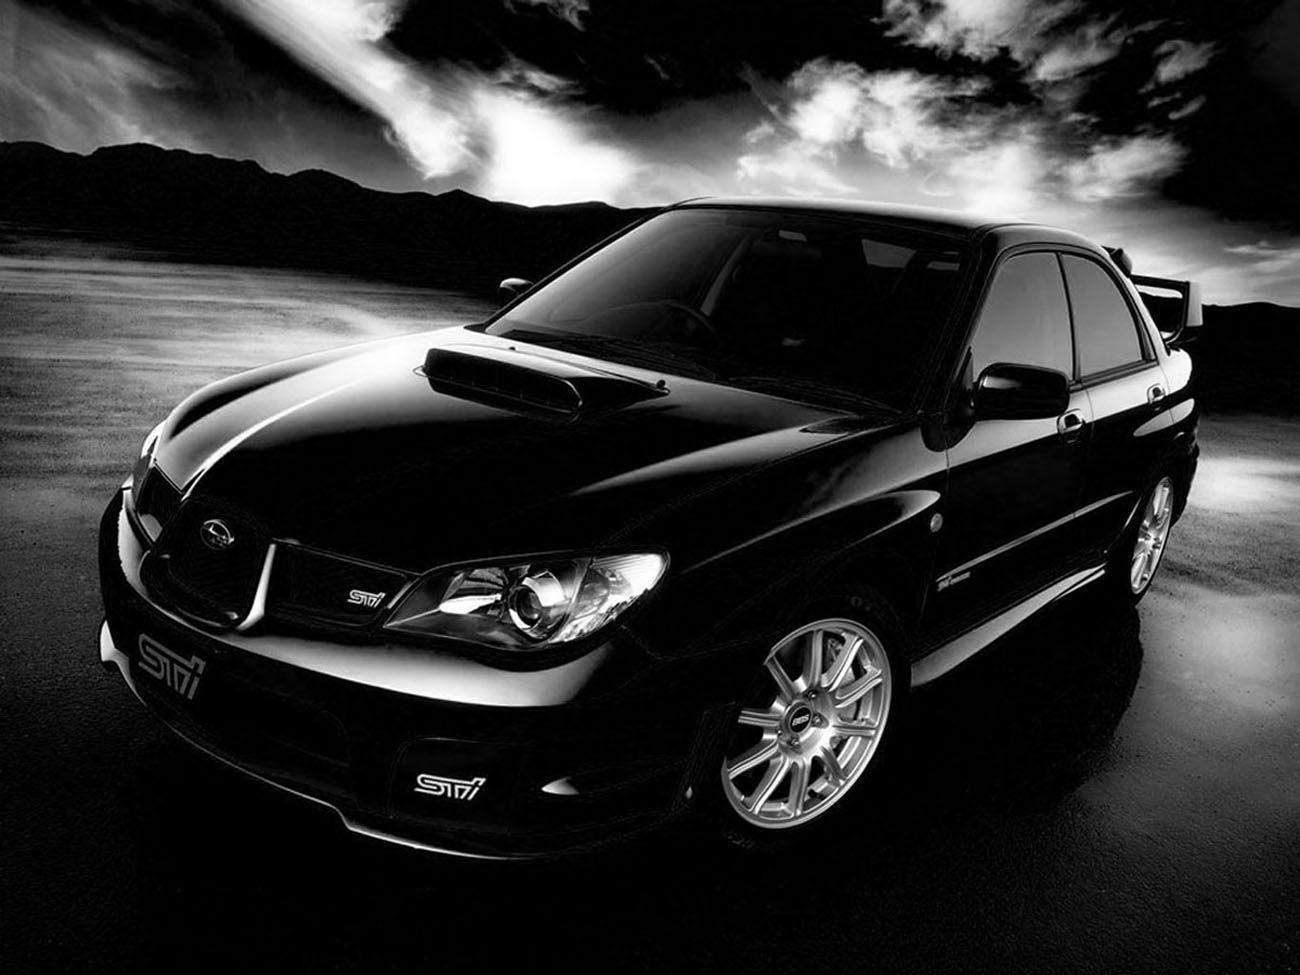 Subaru Wrx Sti 2005 Wallpaper. Subaru. CAR GALLERY